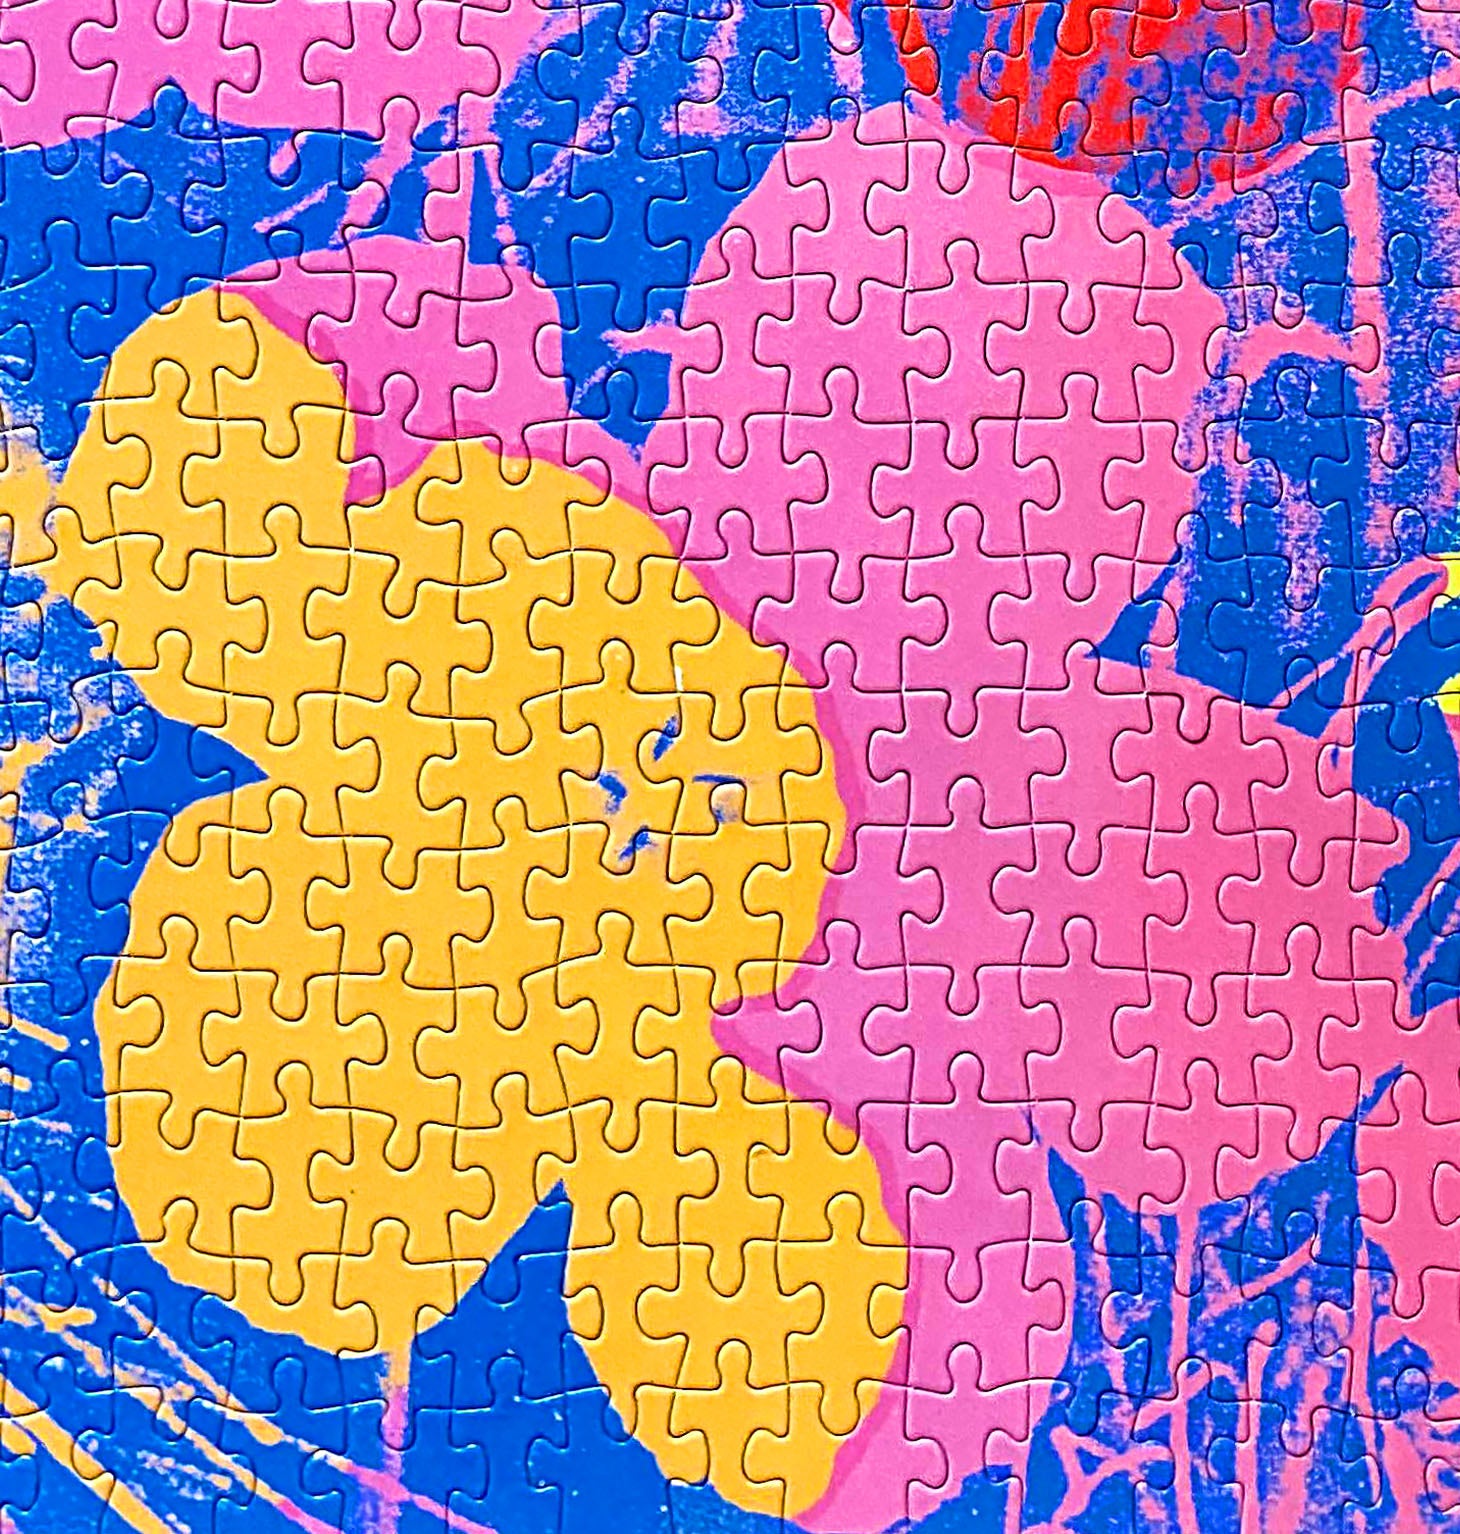 500-piece Andy Warhol Flowers Jigsaw Puzzle